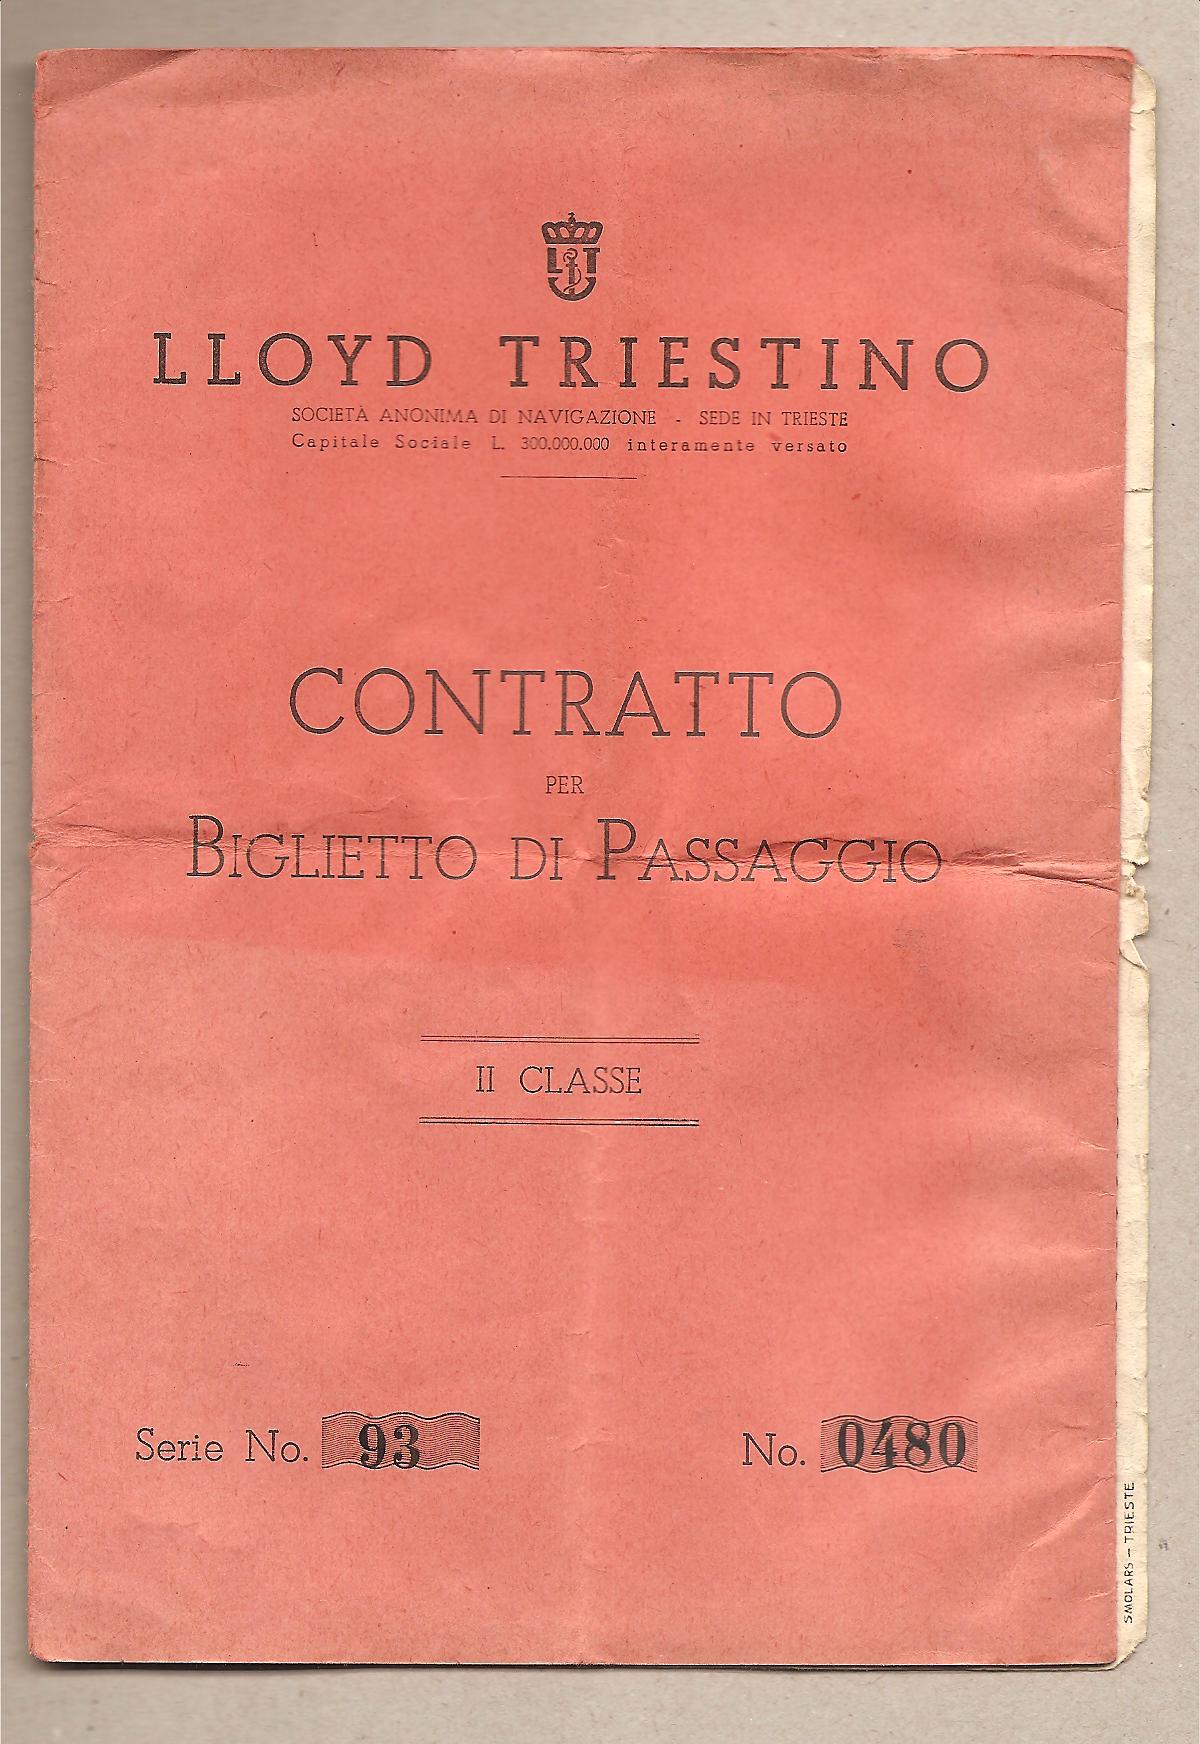 40032 - Eritrea - biglietto di passaggio tra Eritrea ed Italia nave URANIA - 1938 - Rarissimo documento Storico